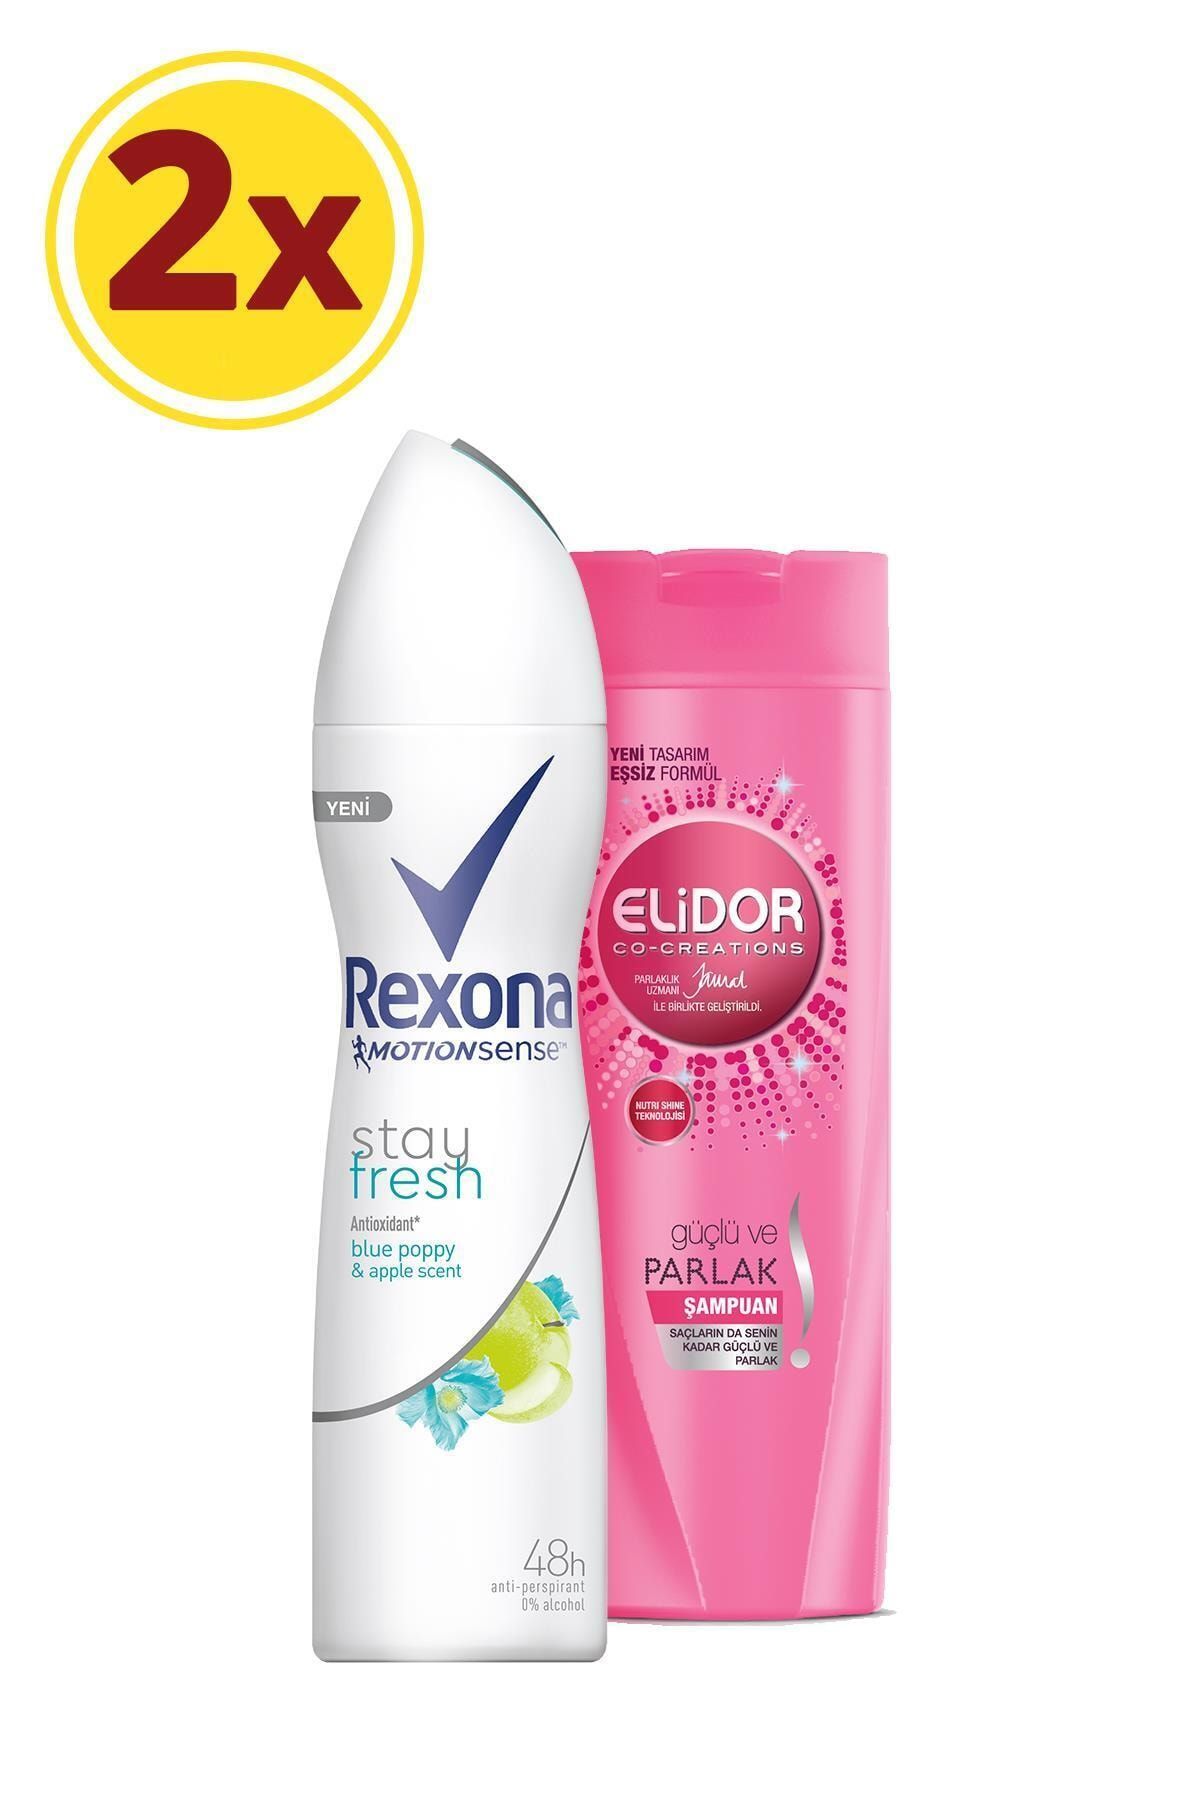 Rexona Kadın Deodorant Sprey Stay Fresh 150 ml + Elidor Şampuan Güçlü Ve Parlak 200 ml Set X2